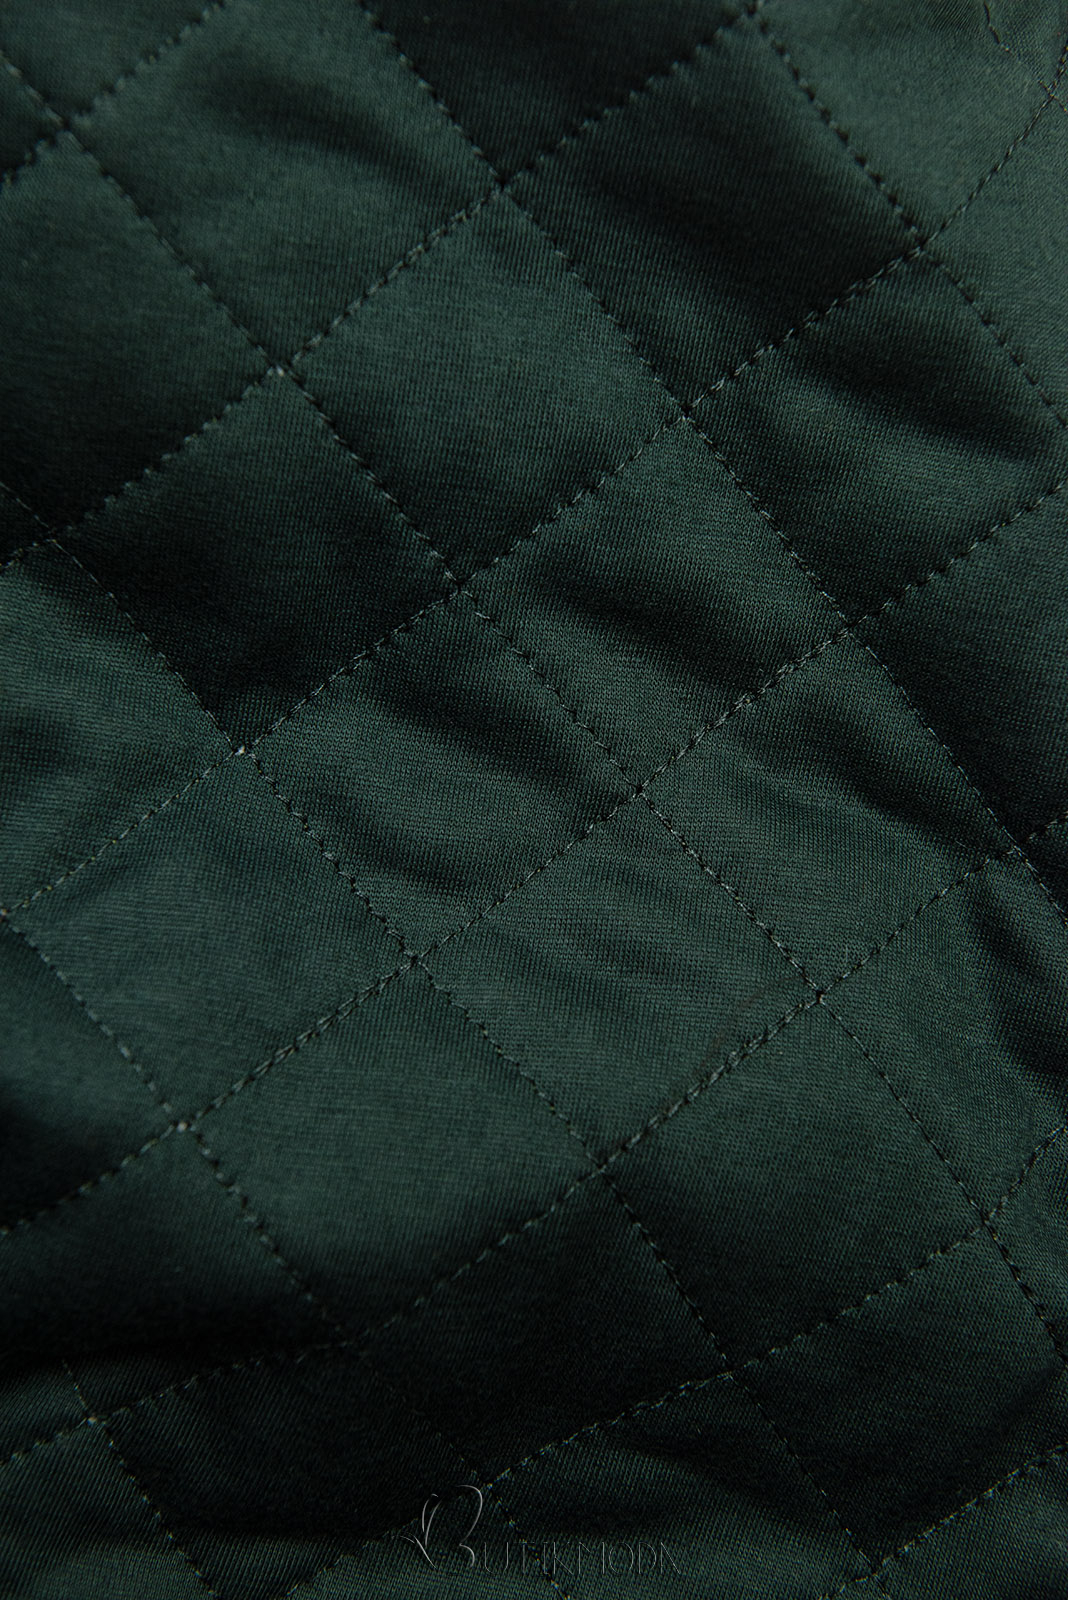 Smaragdzöld színű felső steppelt kapucnival